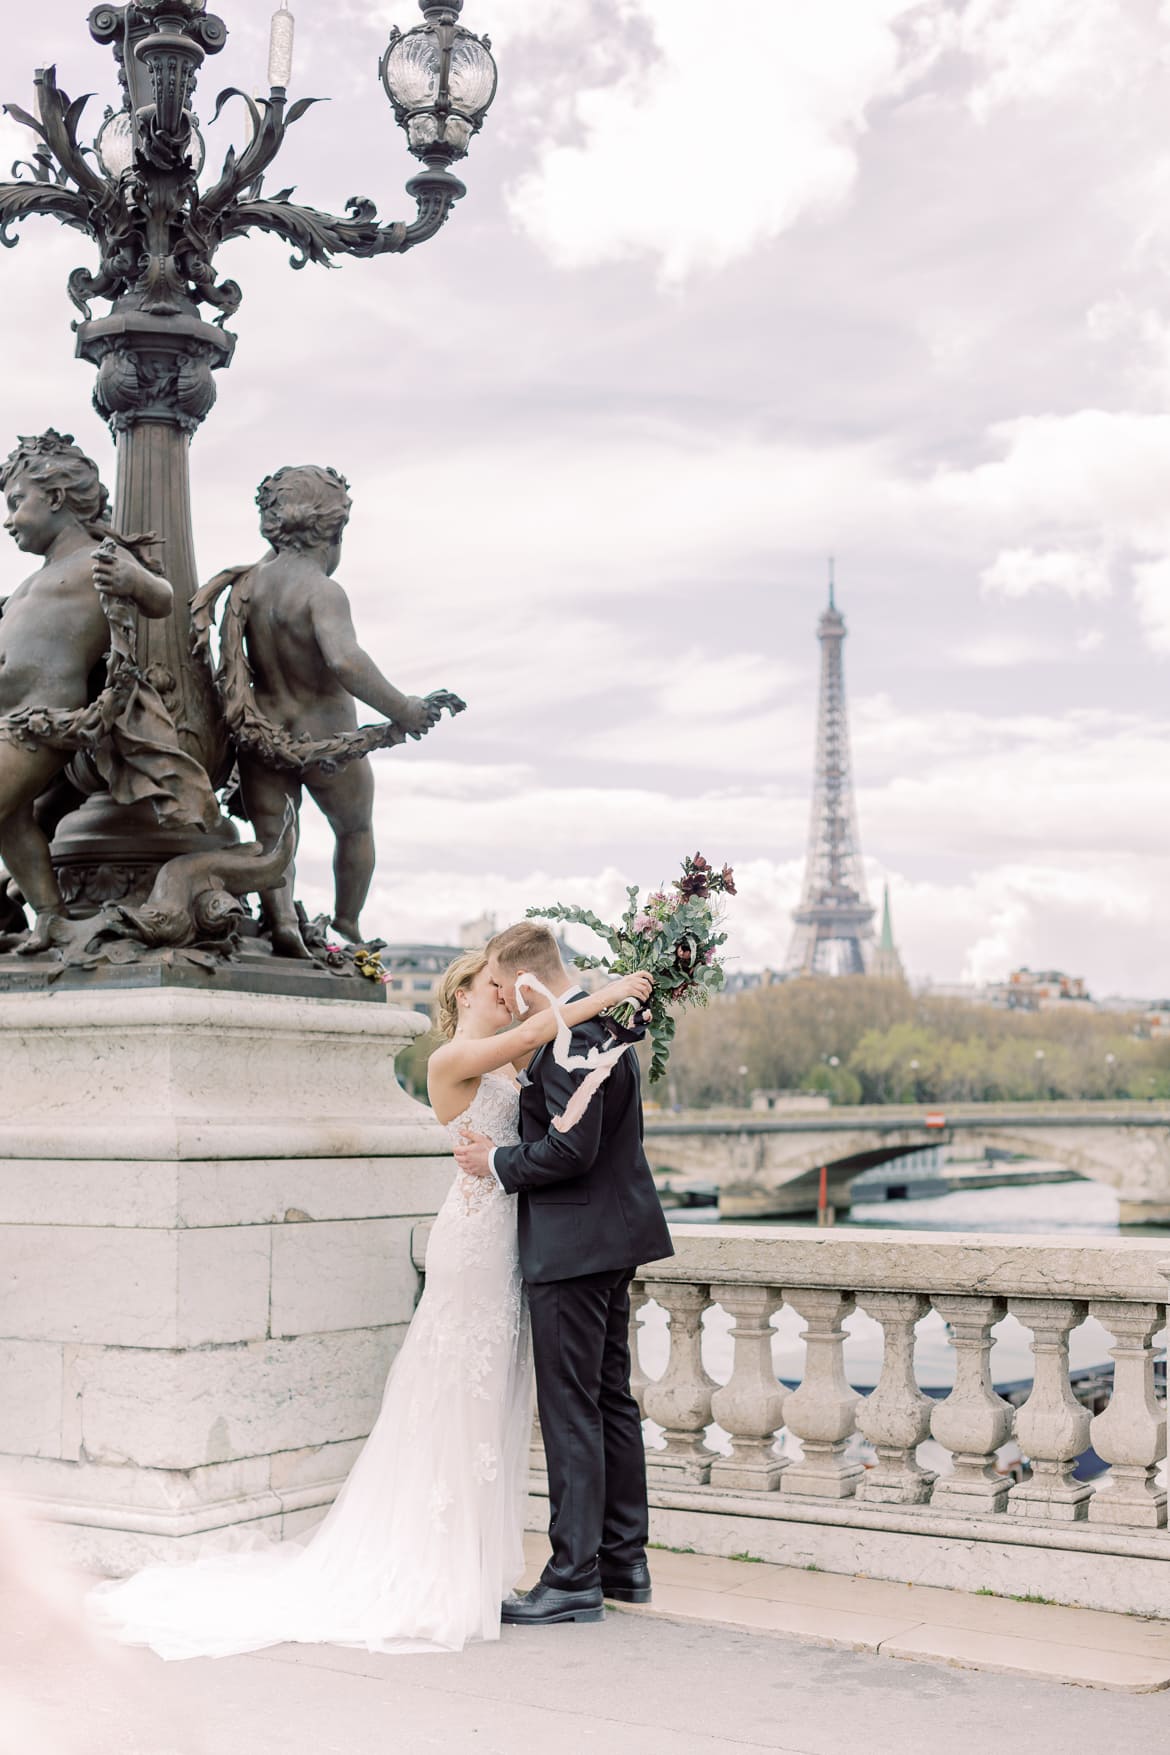 Ein Hochzeitspaar küsst sich auf einer Brücke, im Hintergrund sieht man den Eiffelturm